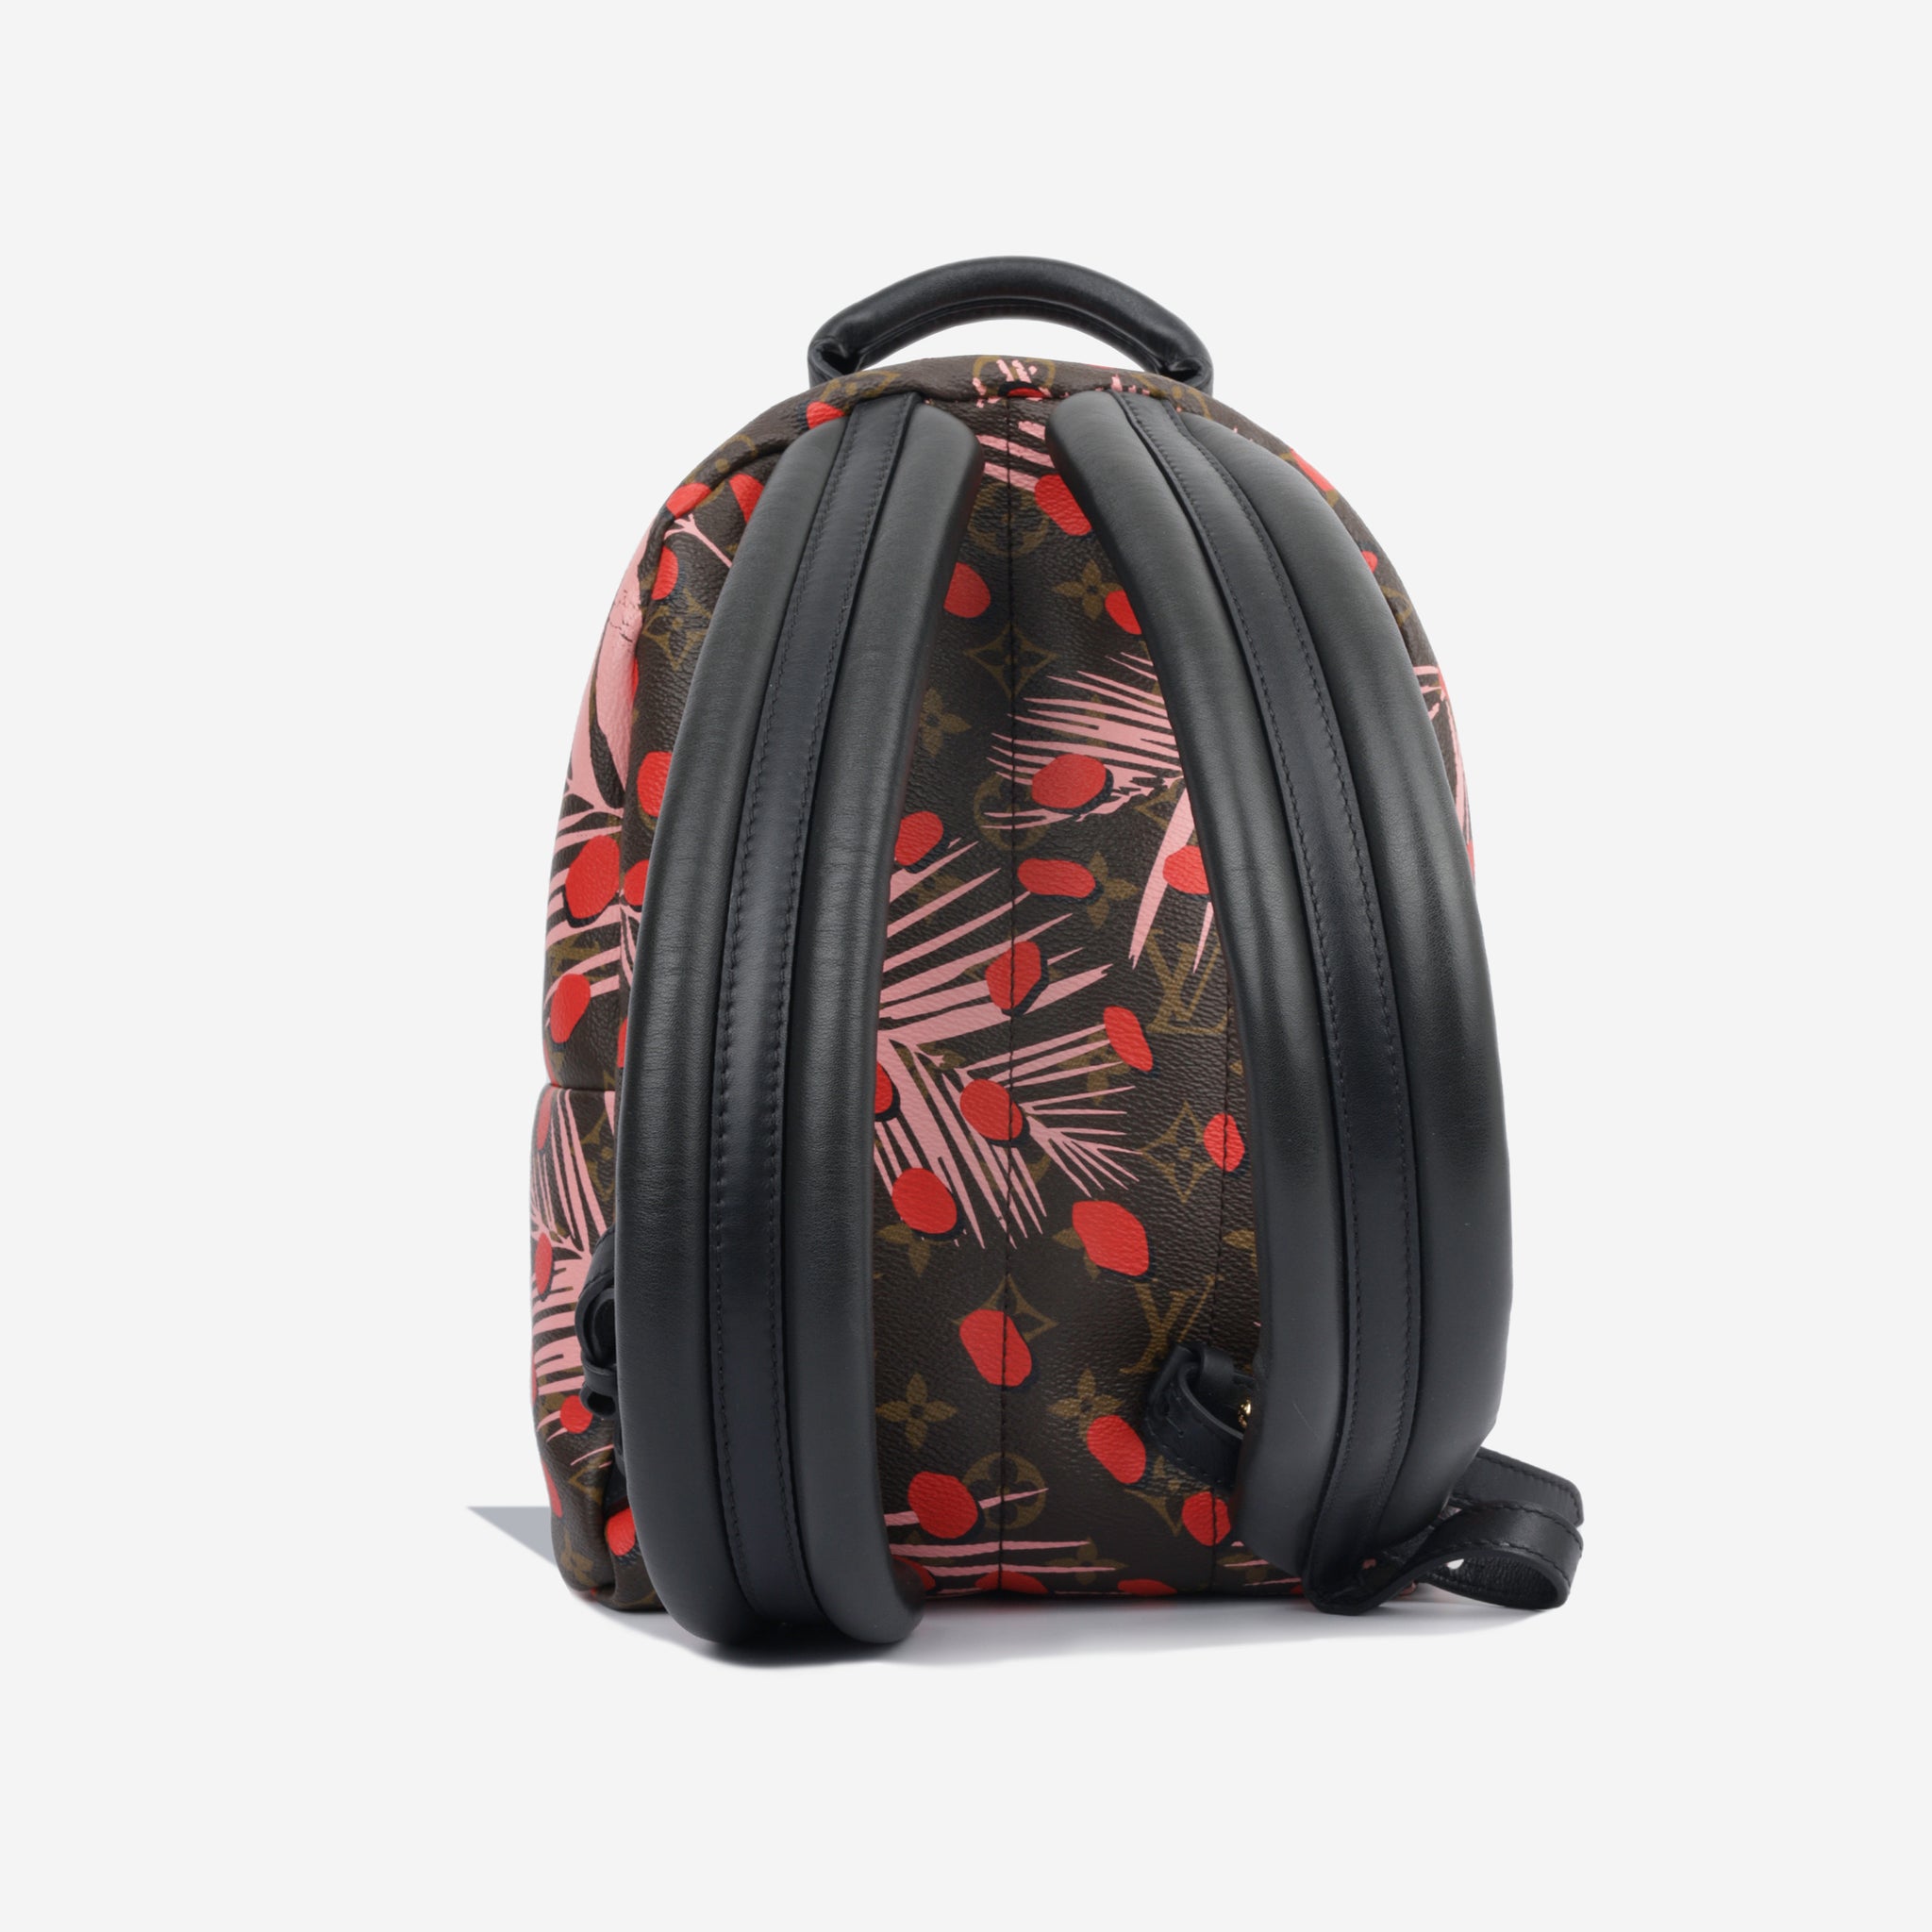 Louis Vuitton Monogram Canvas Jungle Dots Bag Collection